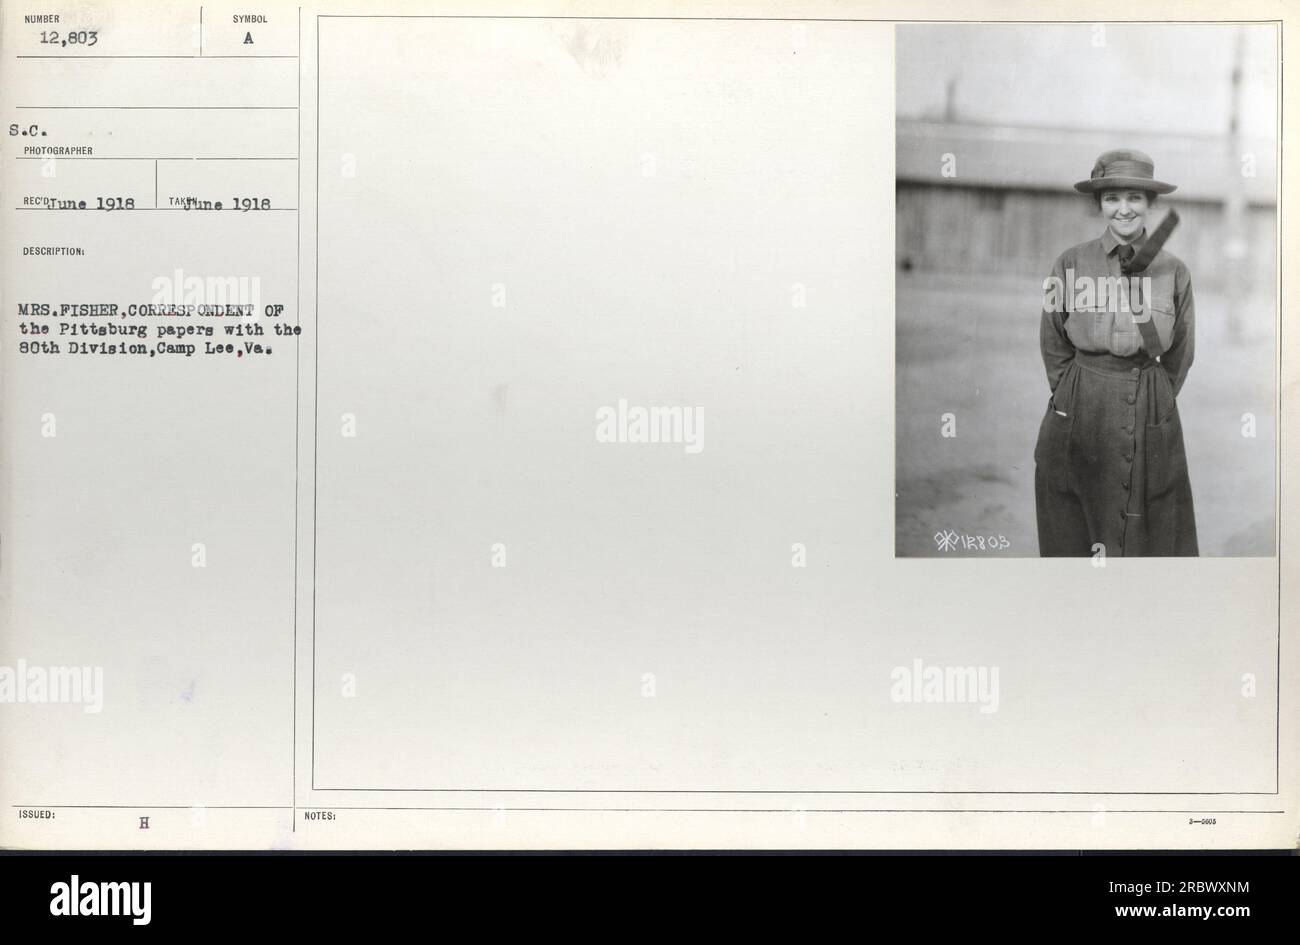 Mrs. Fisher, corrispondente per i giornali di Pittsburg, è vista con la 80th Division a Camp Lee, Virginia, nel giugno 1918. La fotografia è etichettata come numero 12.803 ed è stata scattata da un fotografo S.C. Fa parte di una collezione che documenta le attività militari americane durante la prima guerra mondiale. Foto Stock